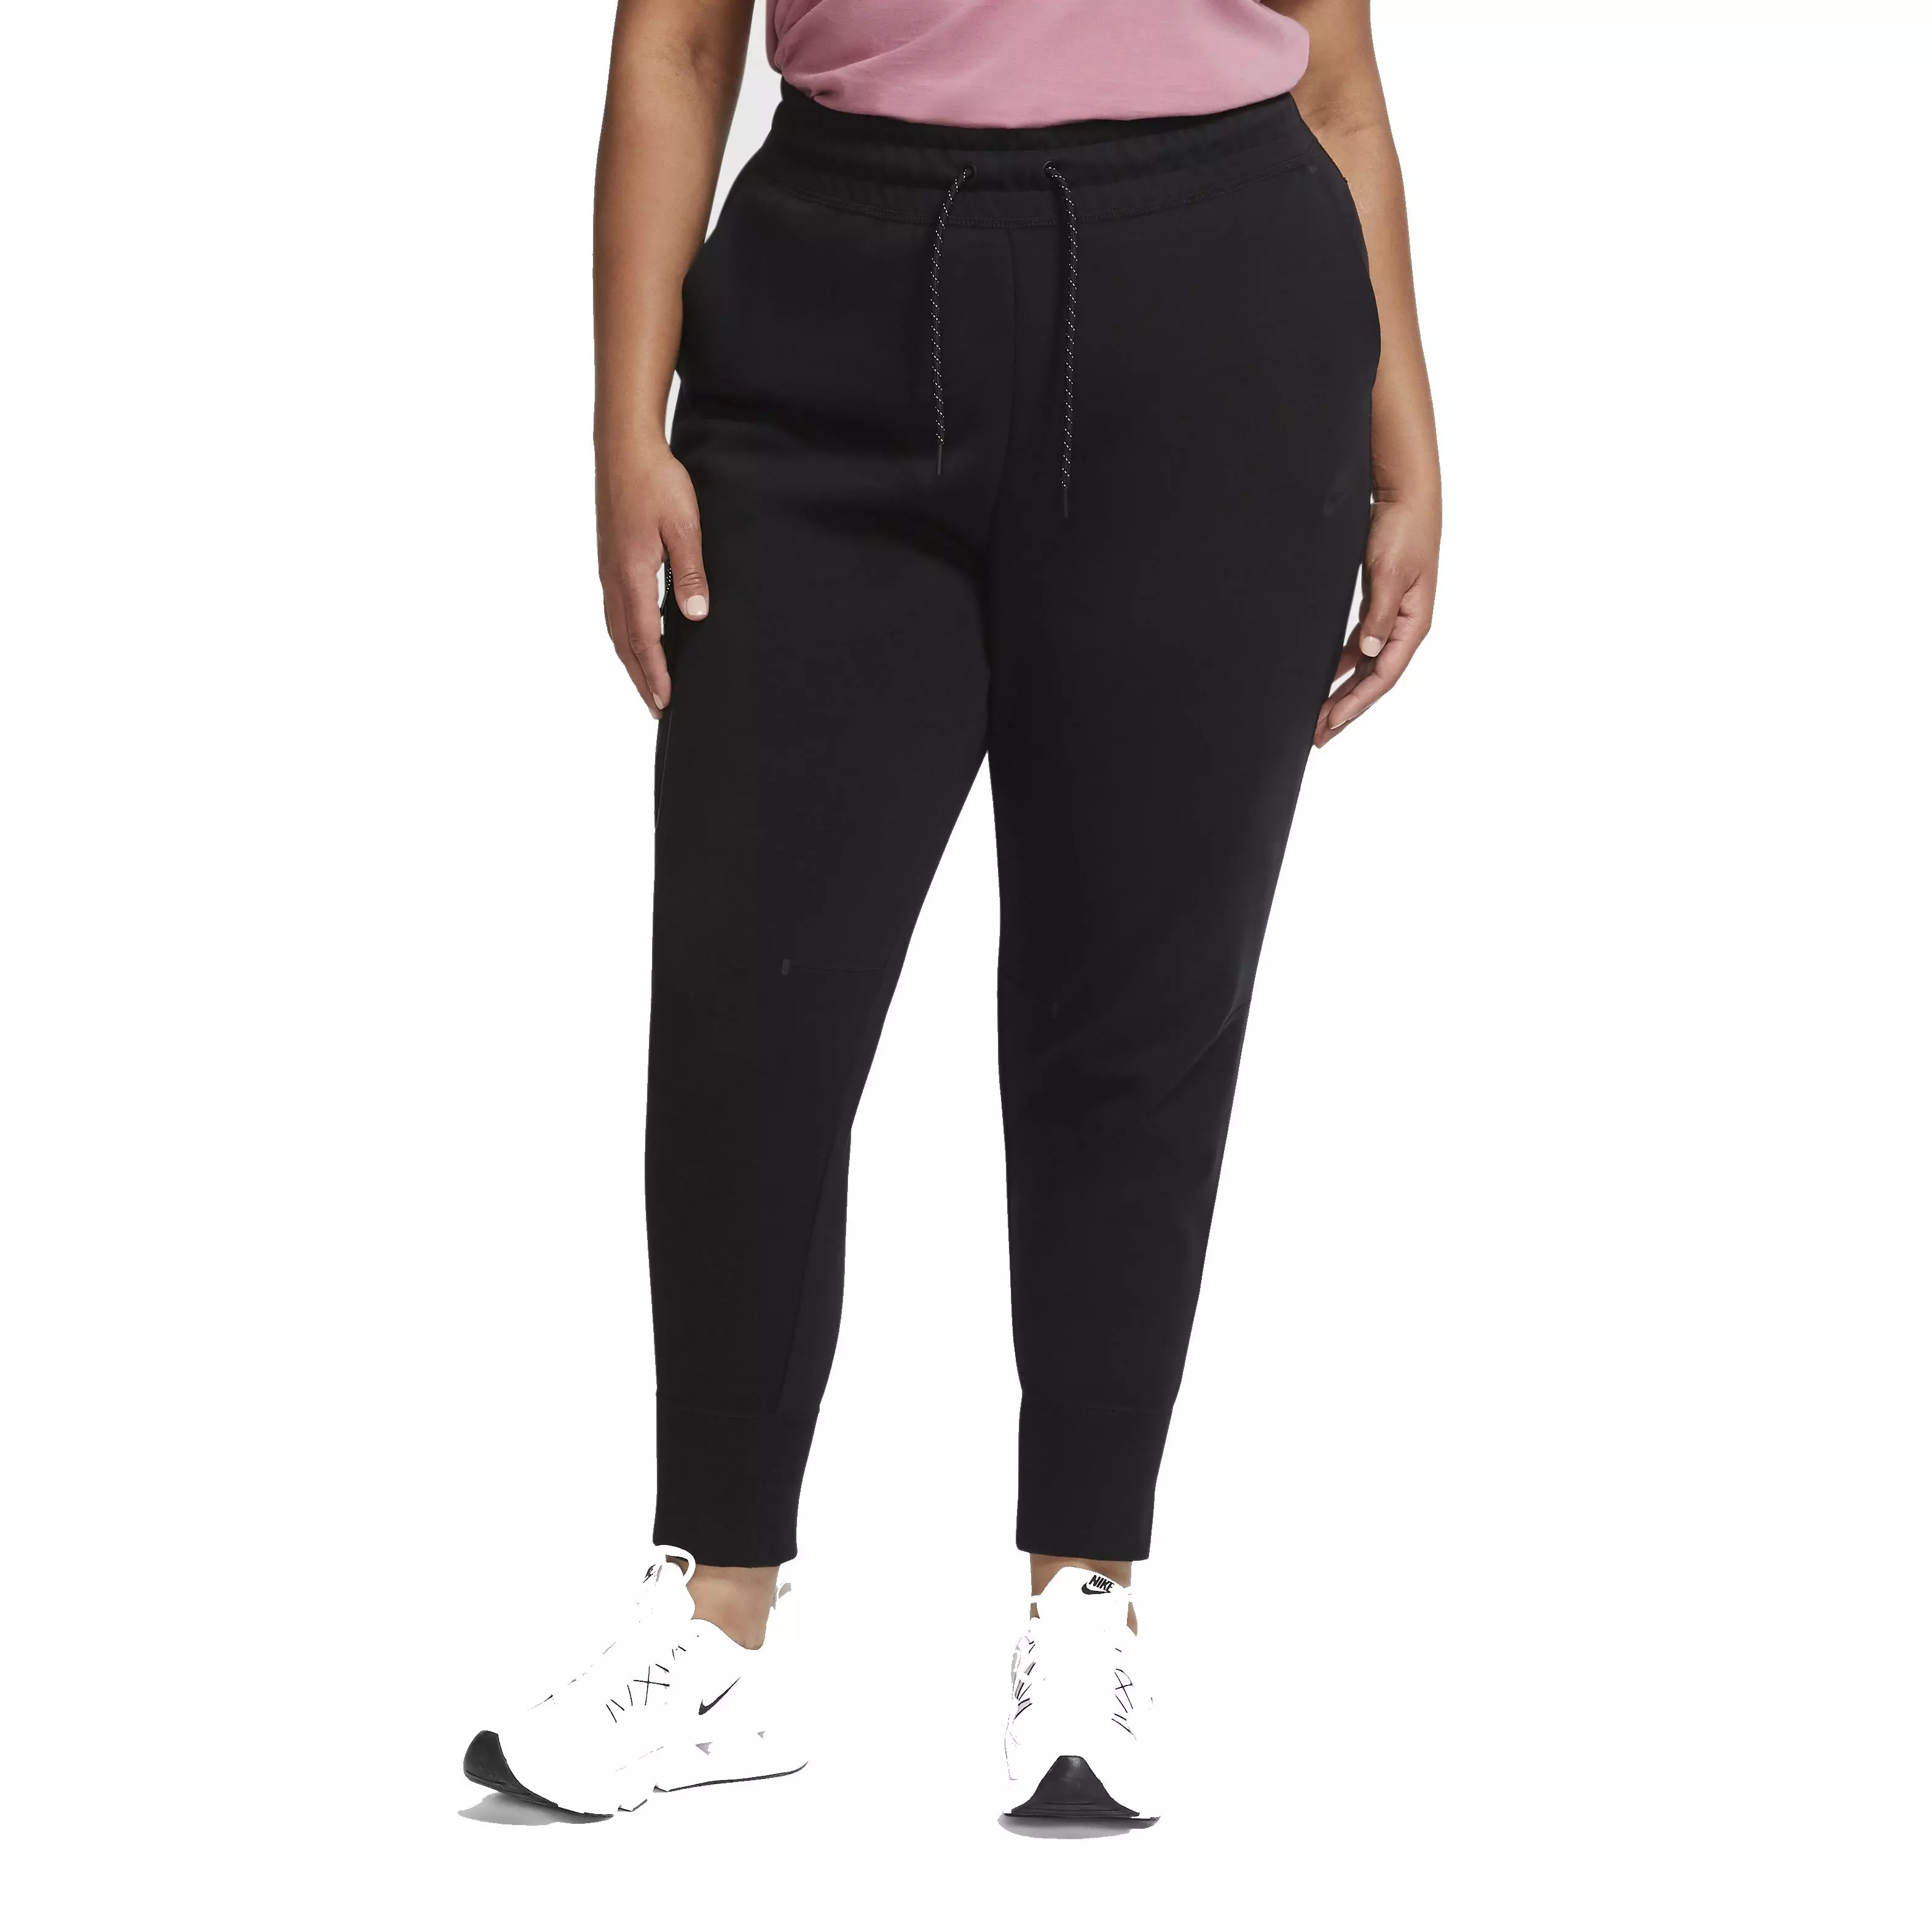 Nike Sportswear Leg-A-See Plus Size Women's Leggings 1X 2X Grey Fashion  Tight